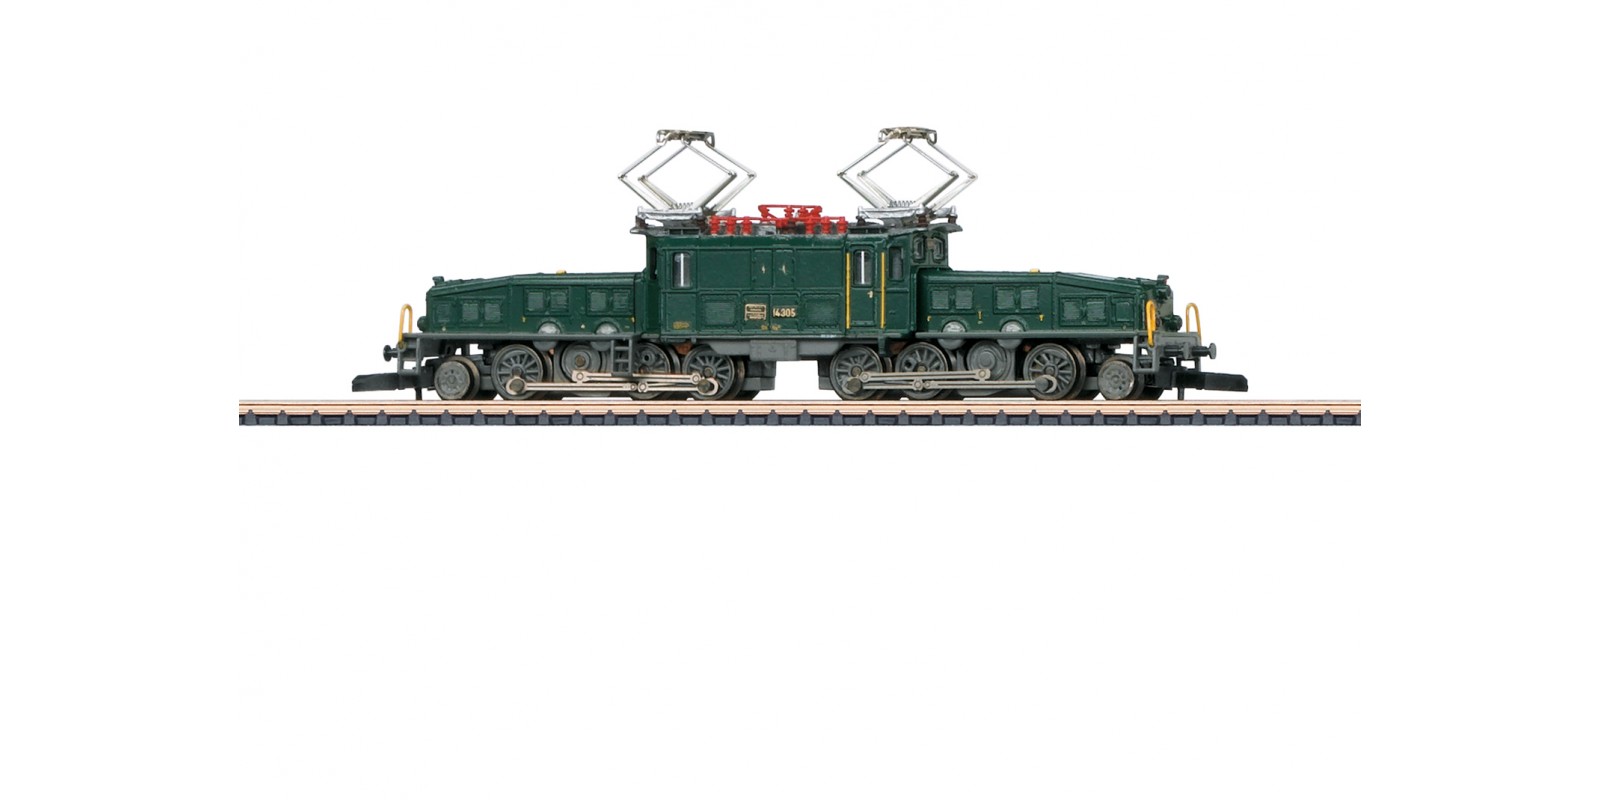 88564 "Crocodile" Class Ce 6/8 III Electric Locomotive